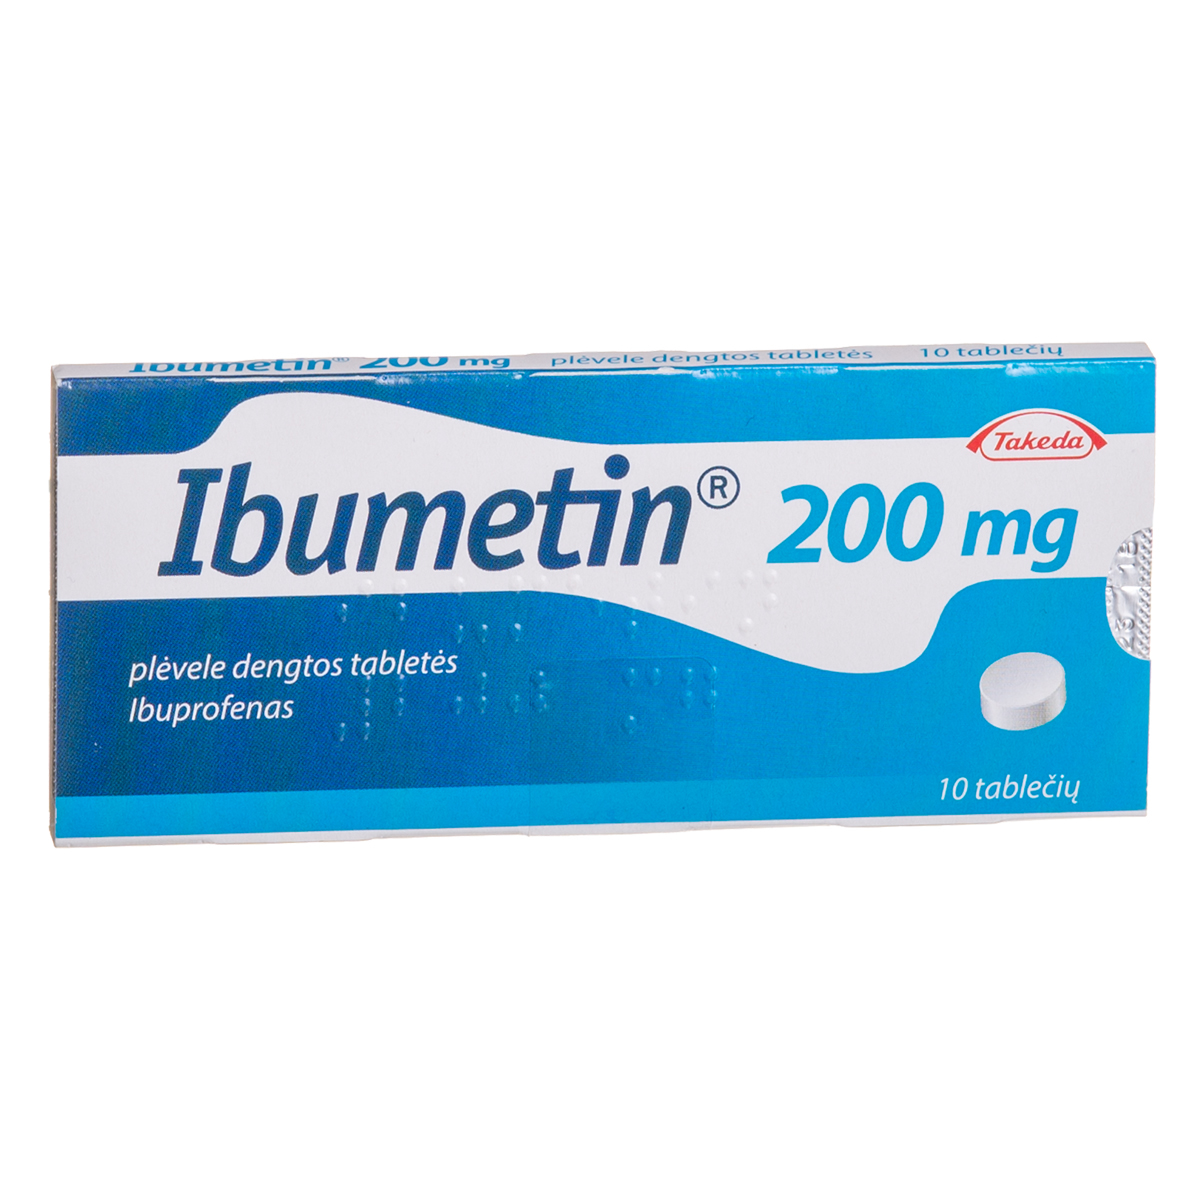 IBUMETIN, 200 mg, plėvele dengtos tabletės, N10